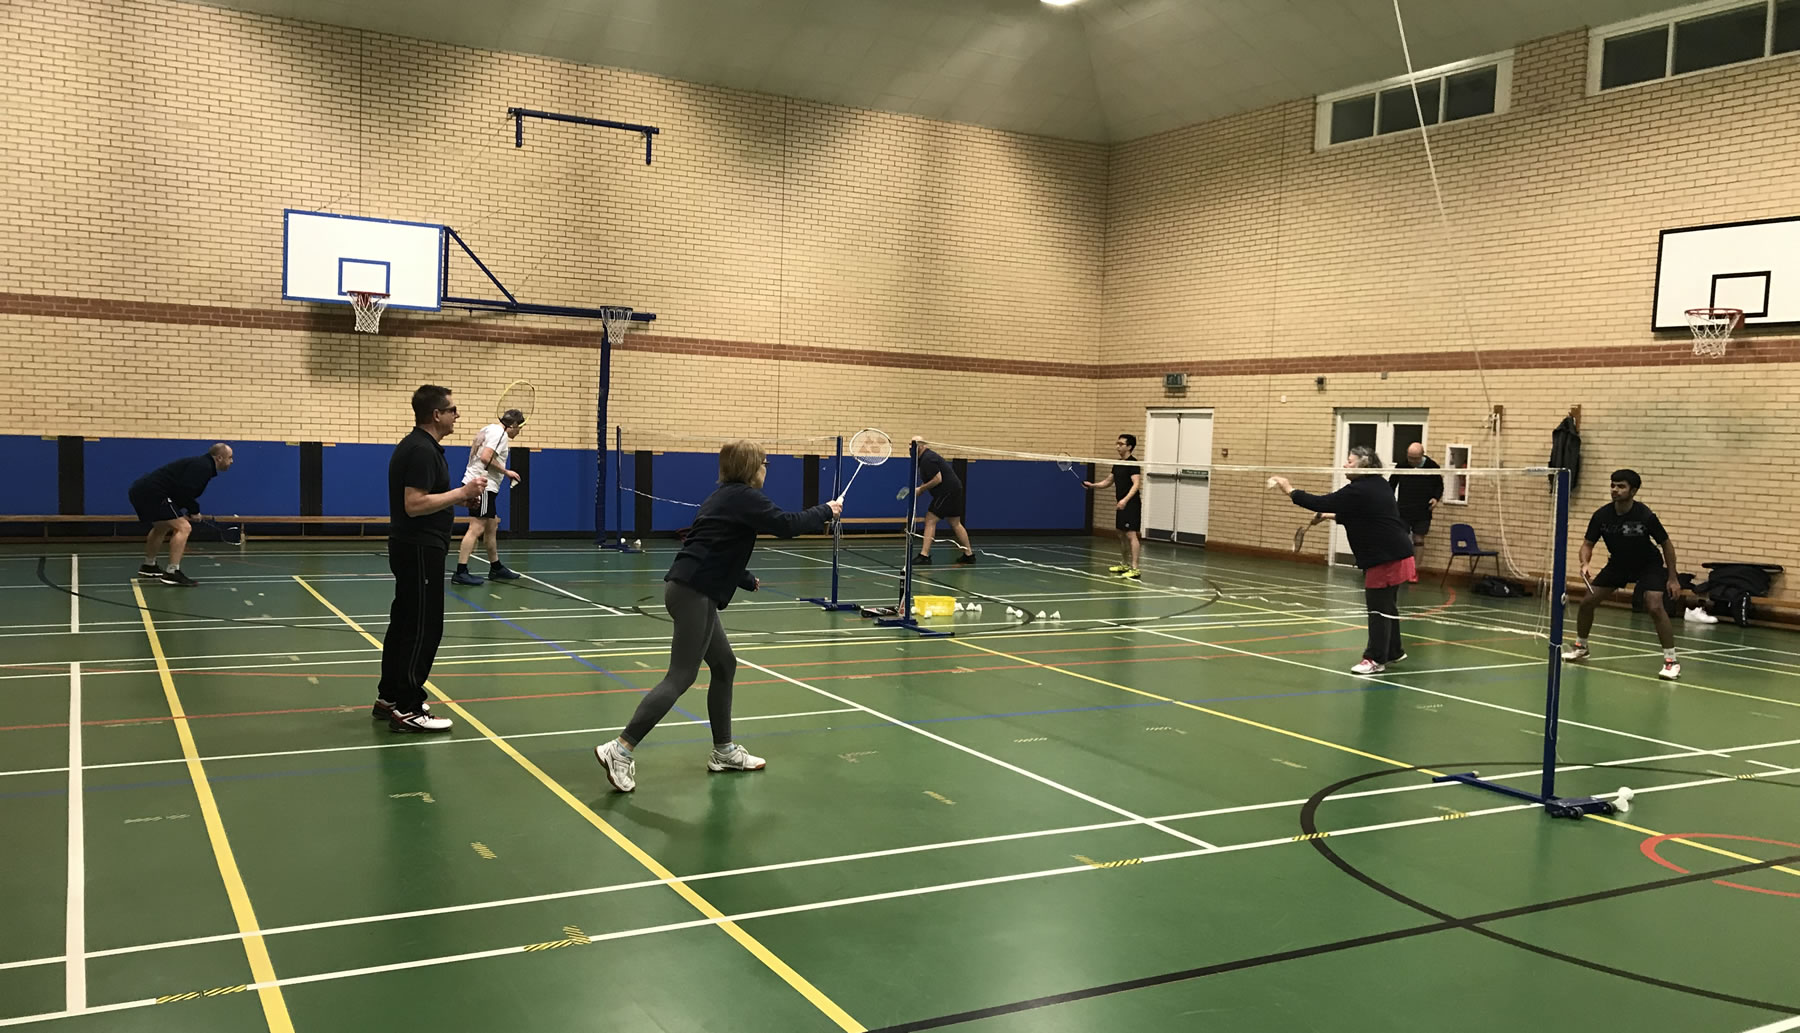 Badminton Club - Chertsey near Woking and Weybridge - Stepgates